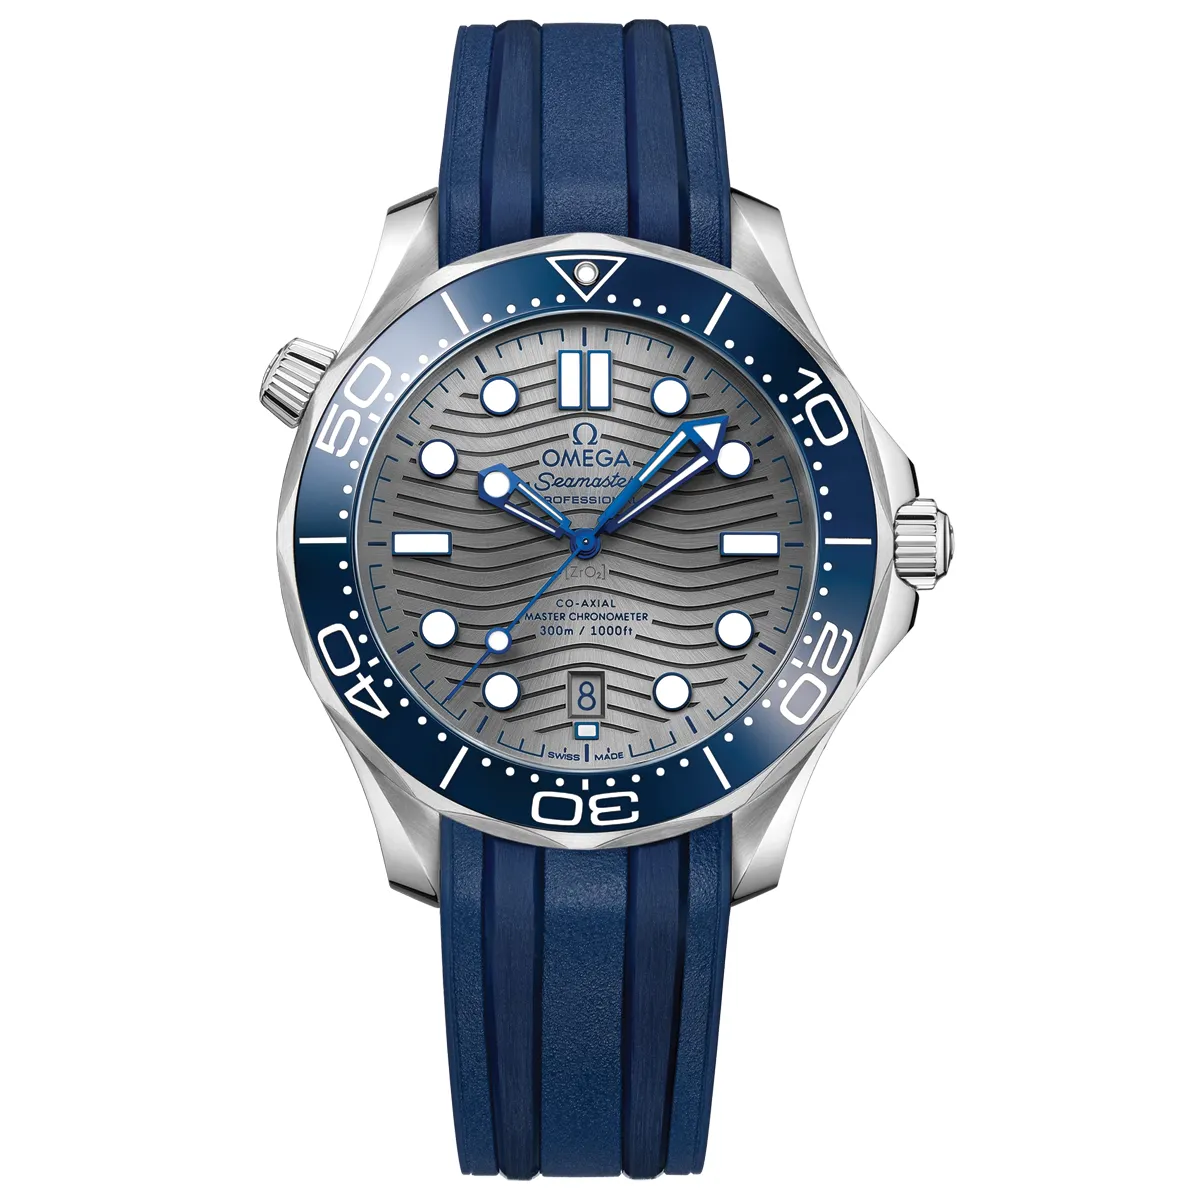 Đồng hồ Omega Seamaster Drive Master Chronometer 210.32.42.20.06.001 mặt số màu xanh. Dây đeo bằng cao su. Thân vỏ bằng thép.